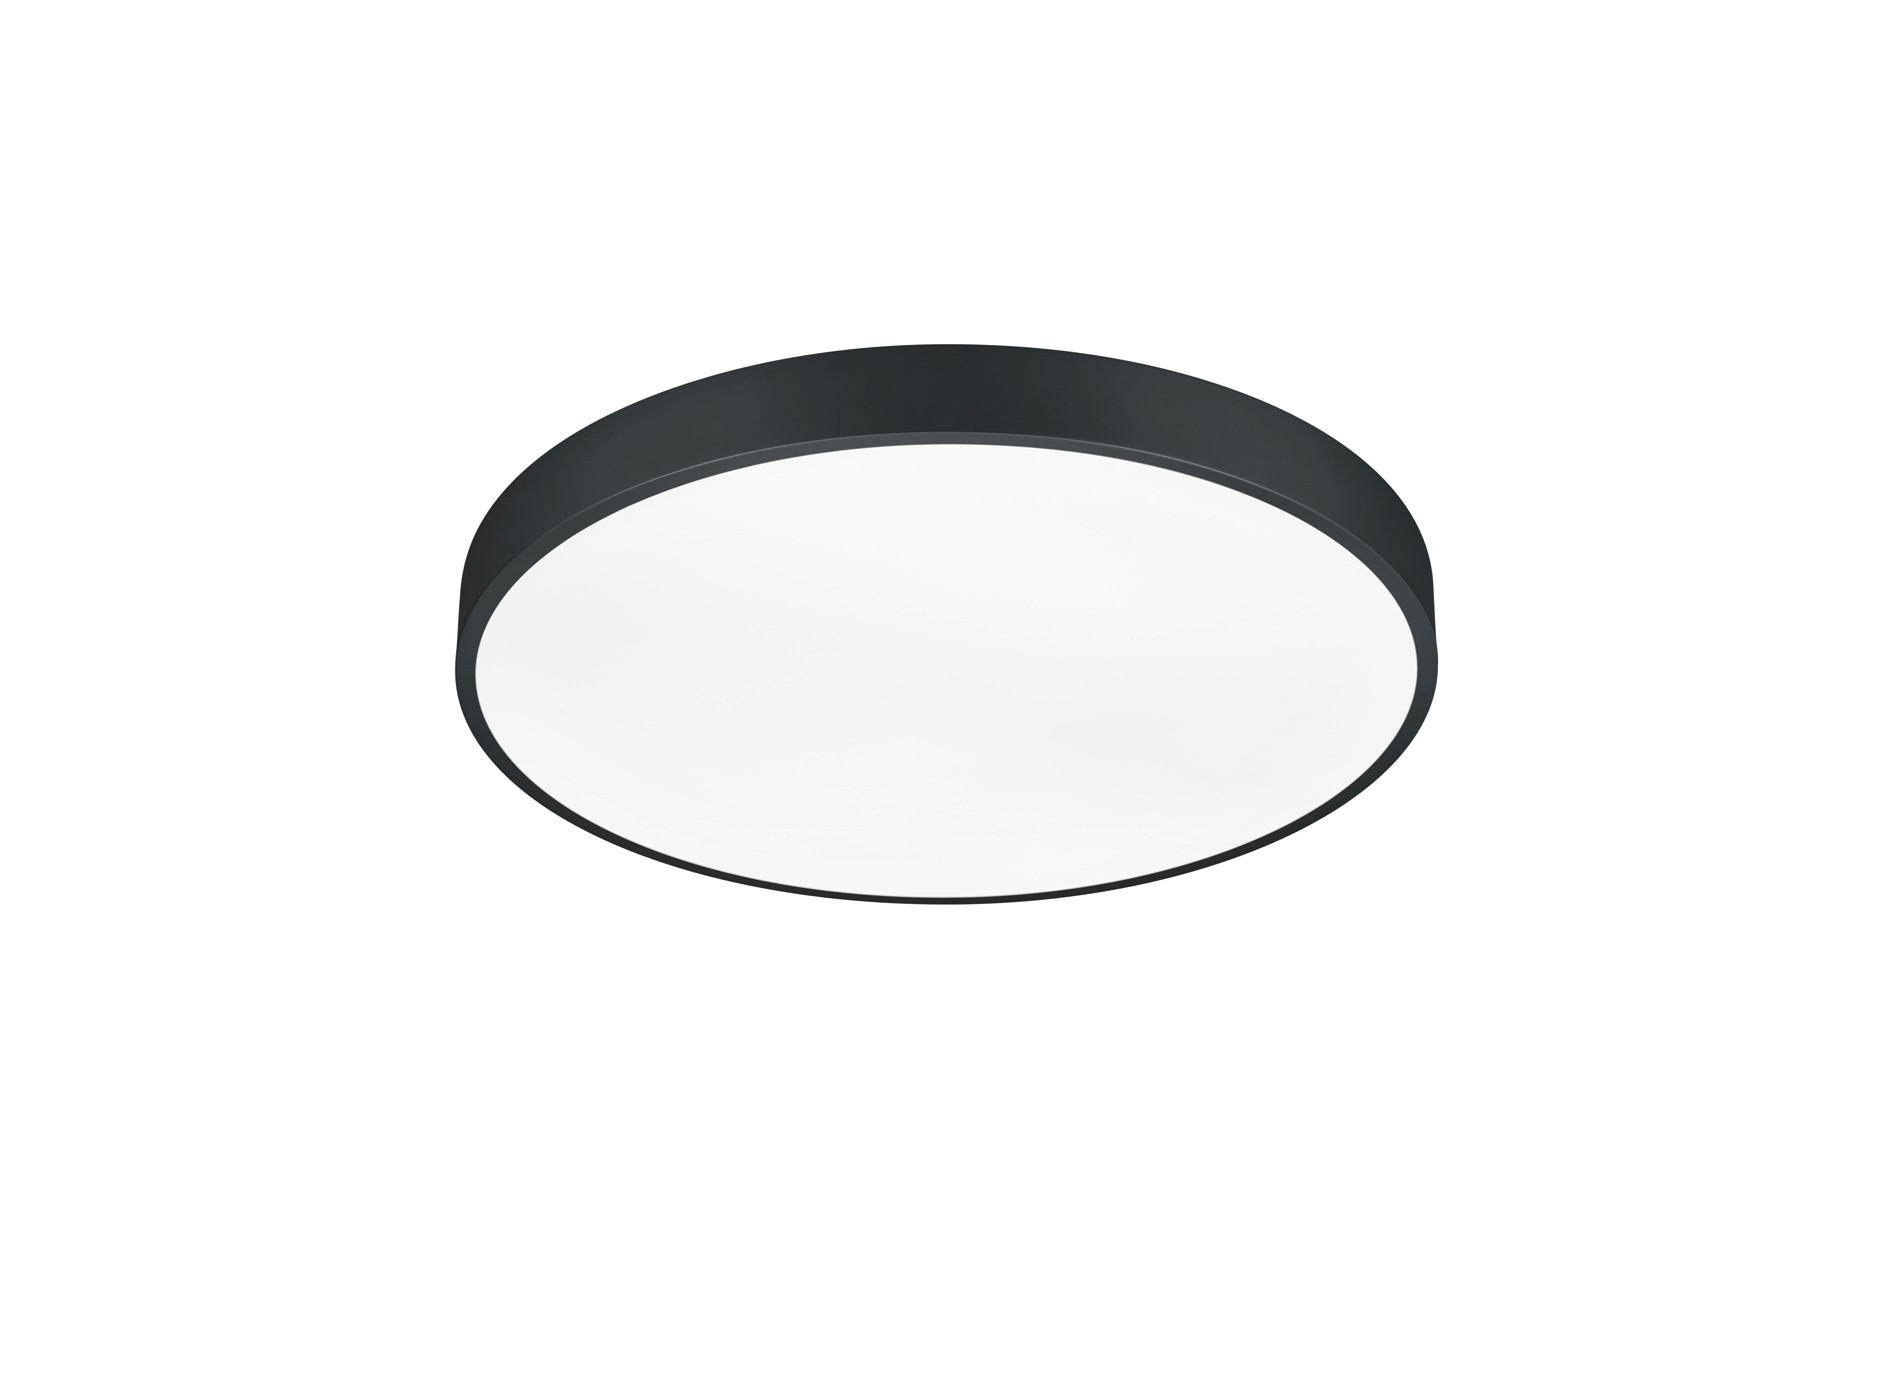 LED-DECKENLEUCHTE WACO 49,5/6,5 cm   - Schwarz/Weiß, Basics, Kunststoff/Metall (49,5/6,5cm) - Trio Leuchten